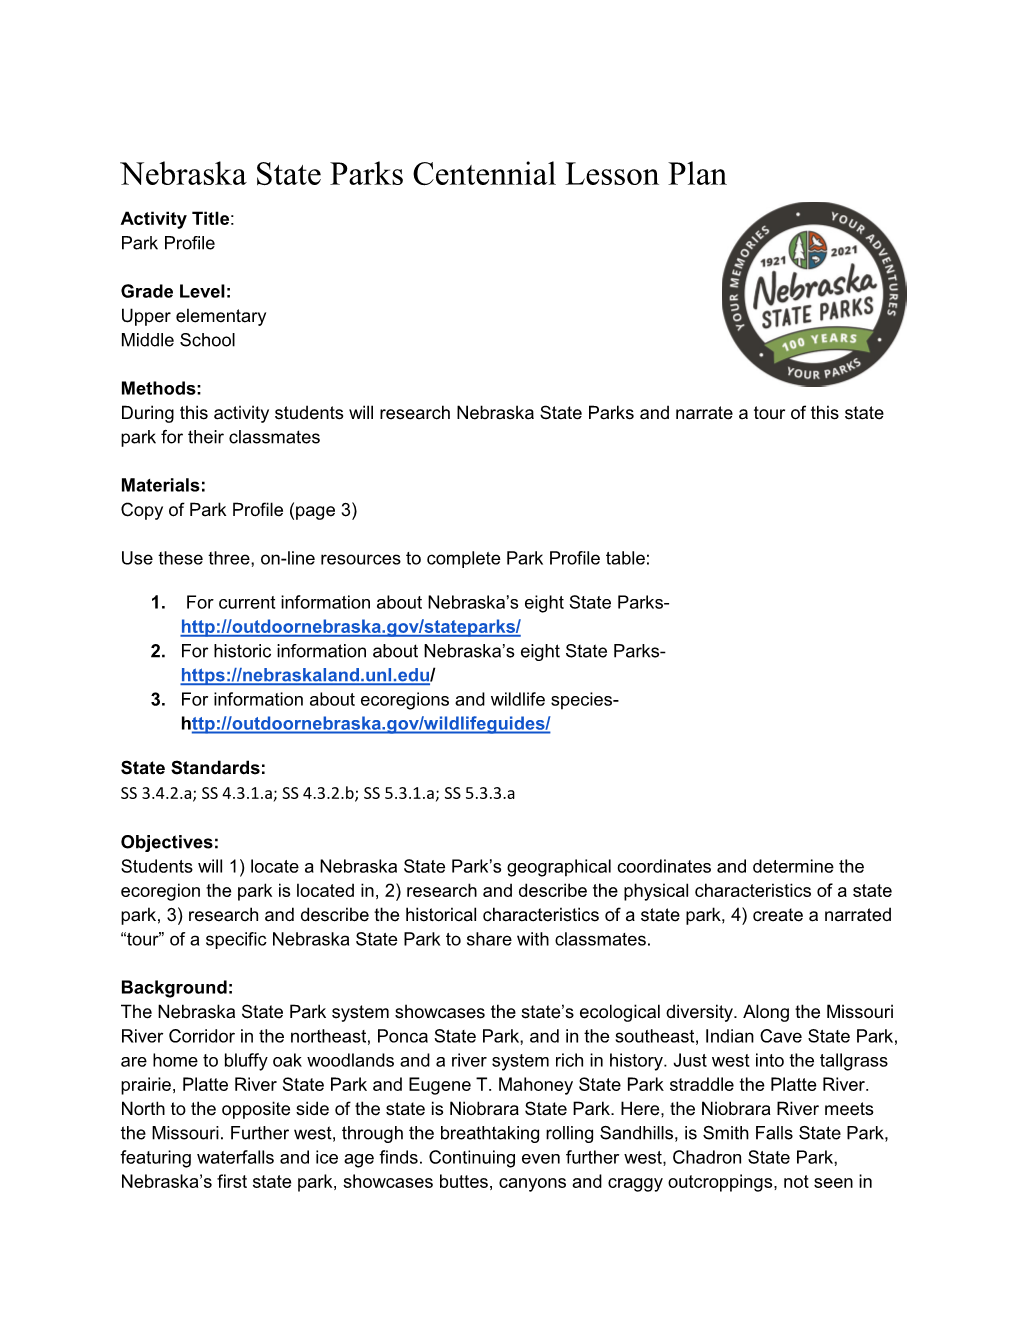 Lesson Plan Activity Title: Park Profile